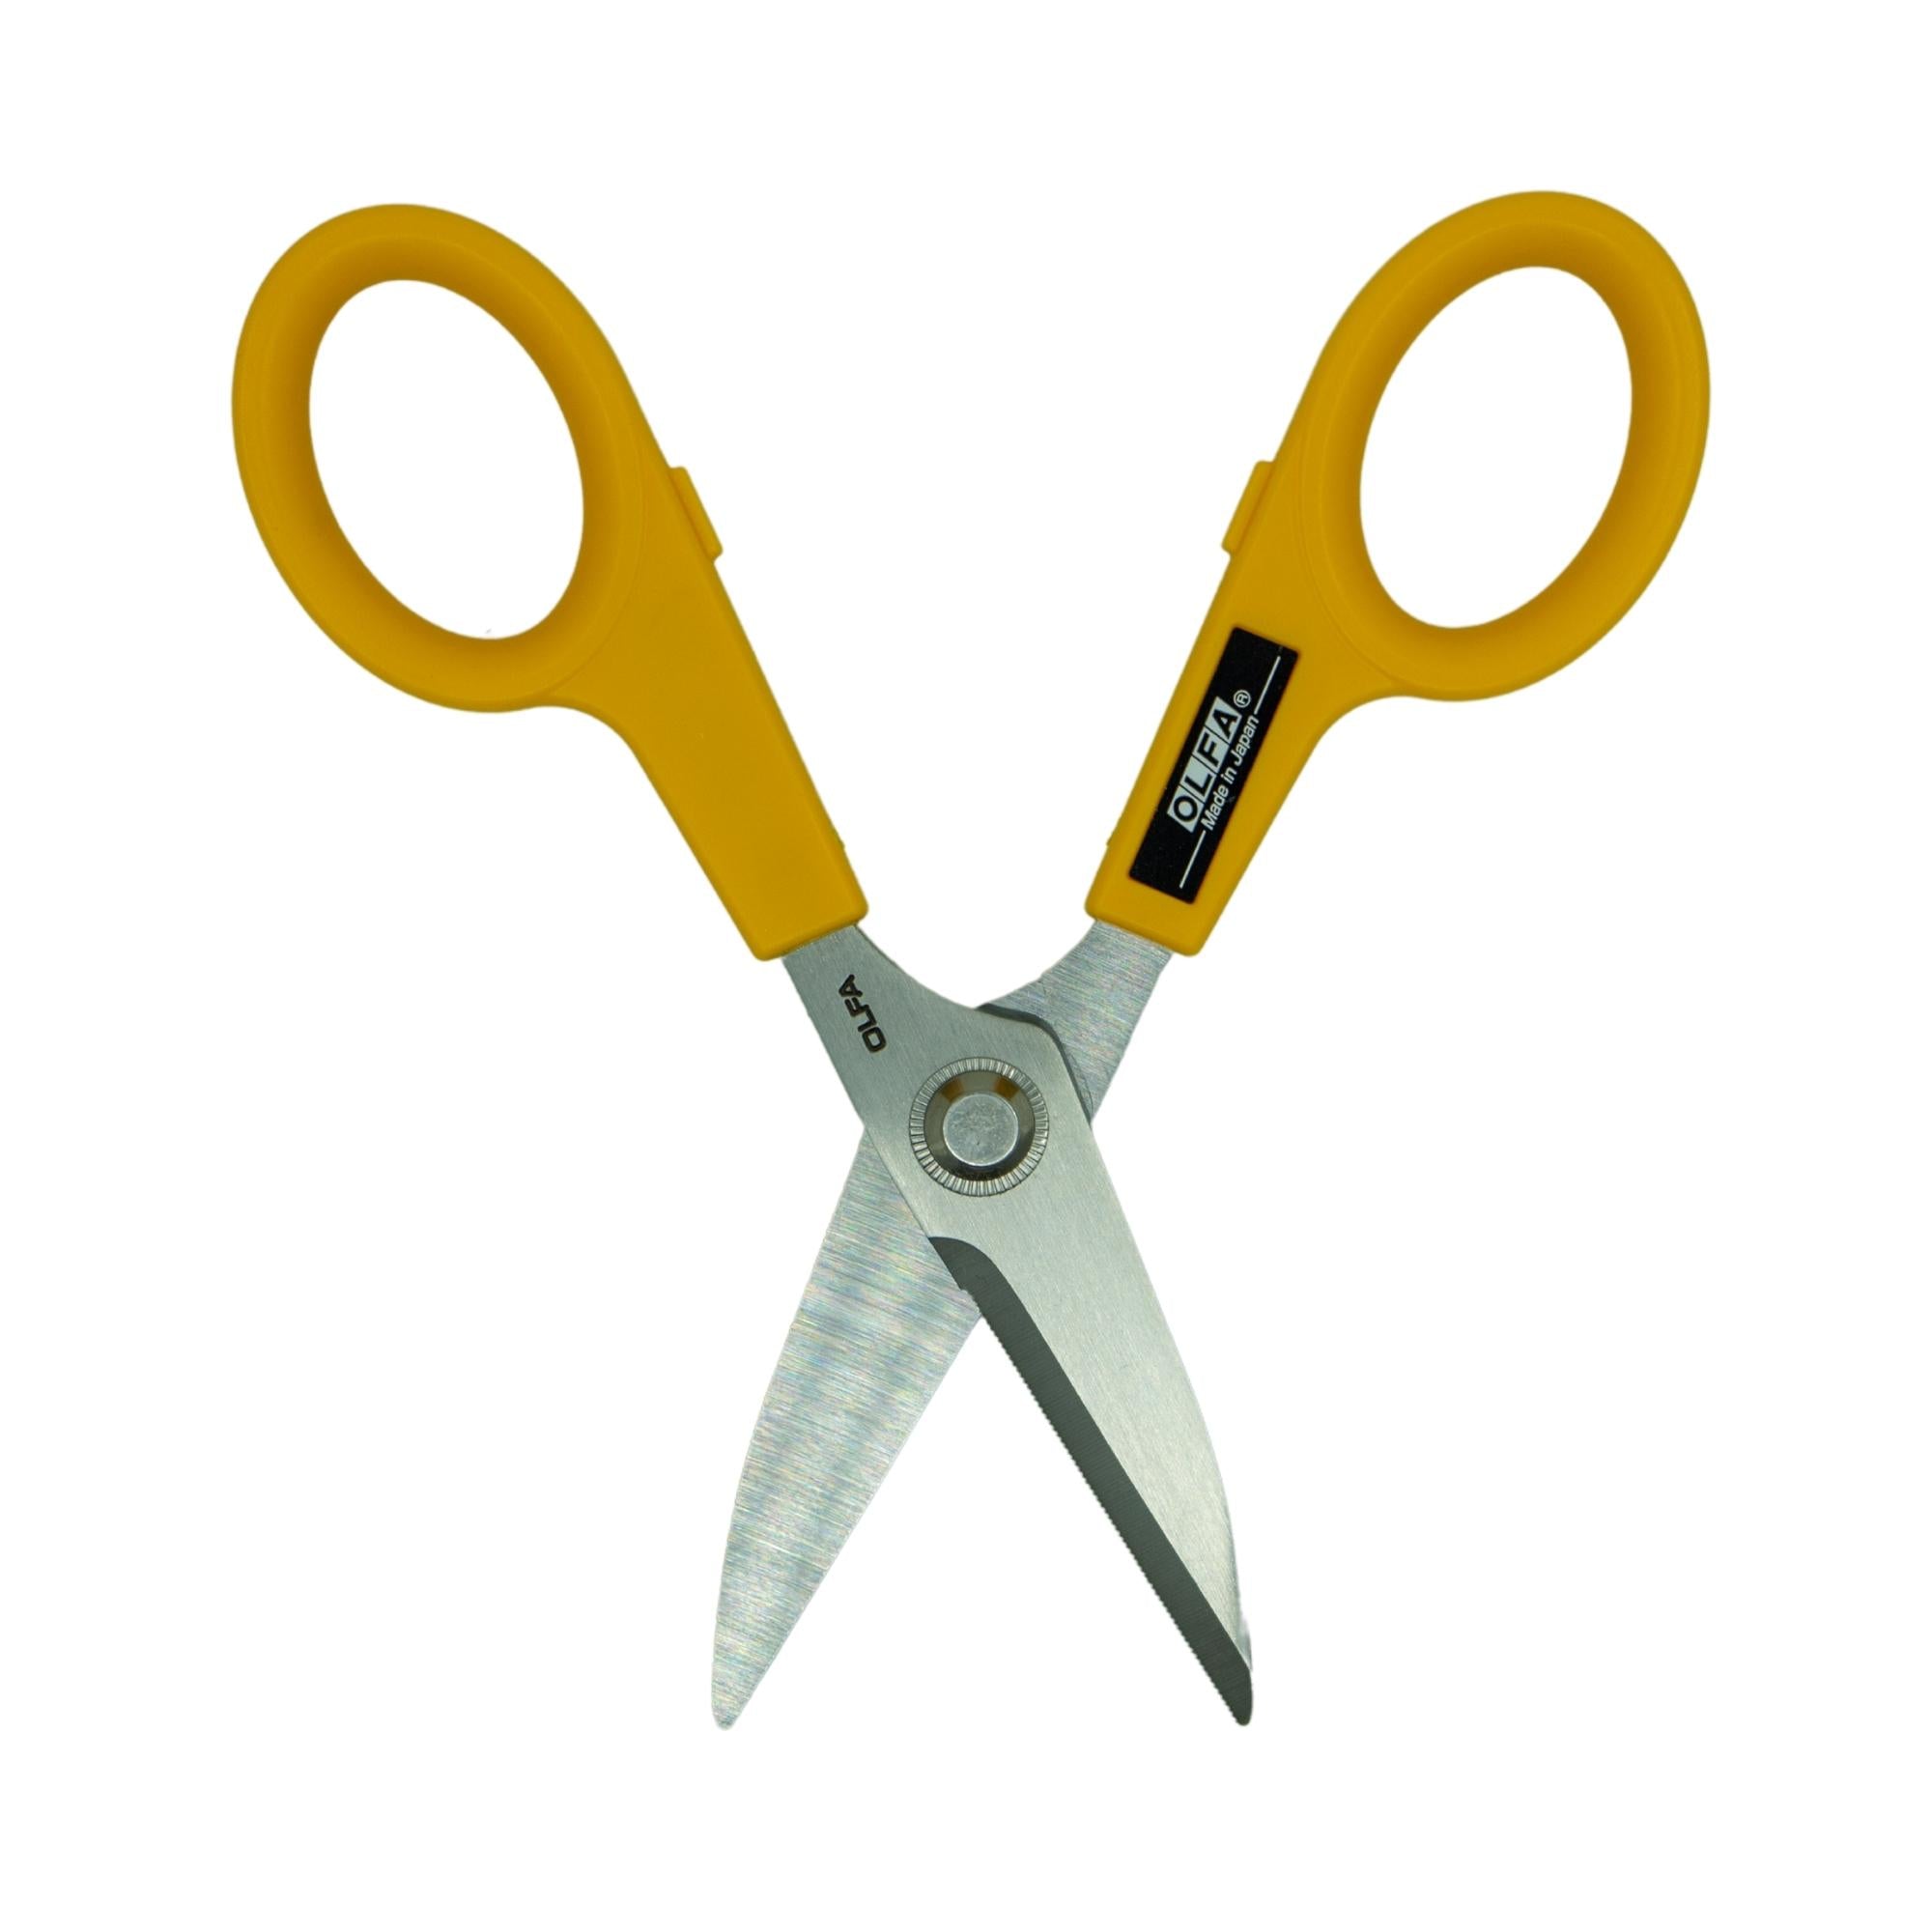 Olfa Pro Quilting & Utility Scissor